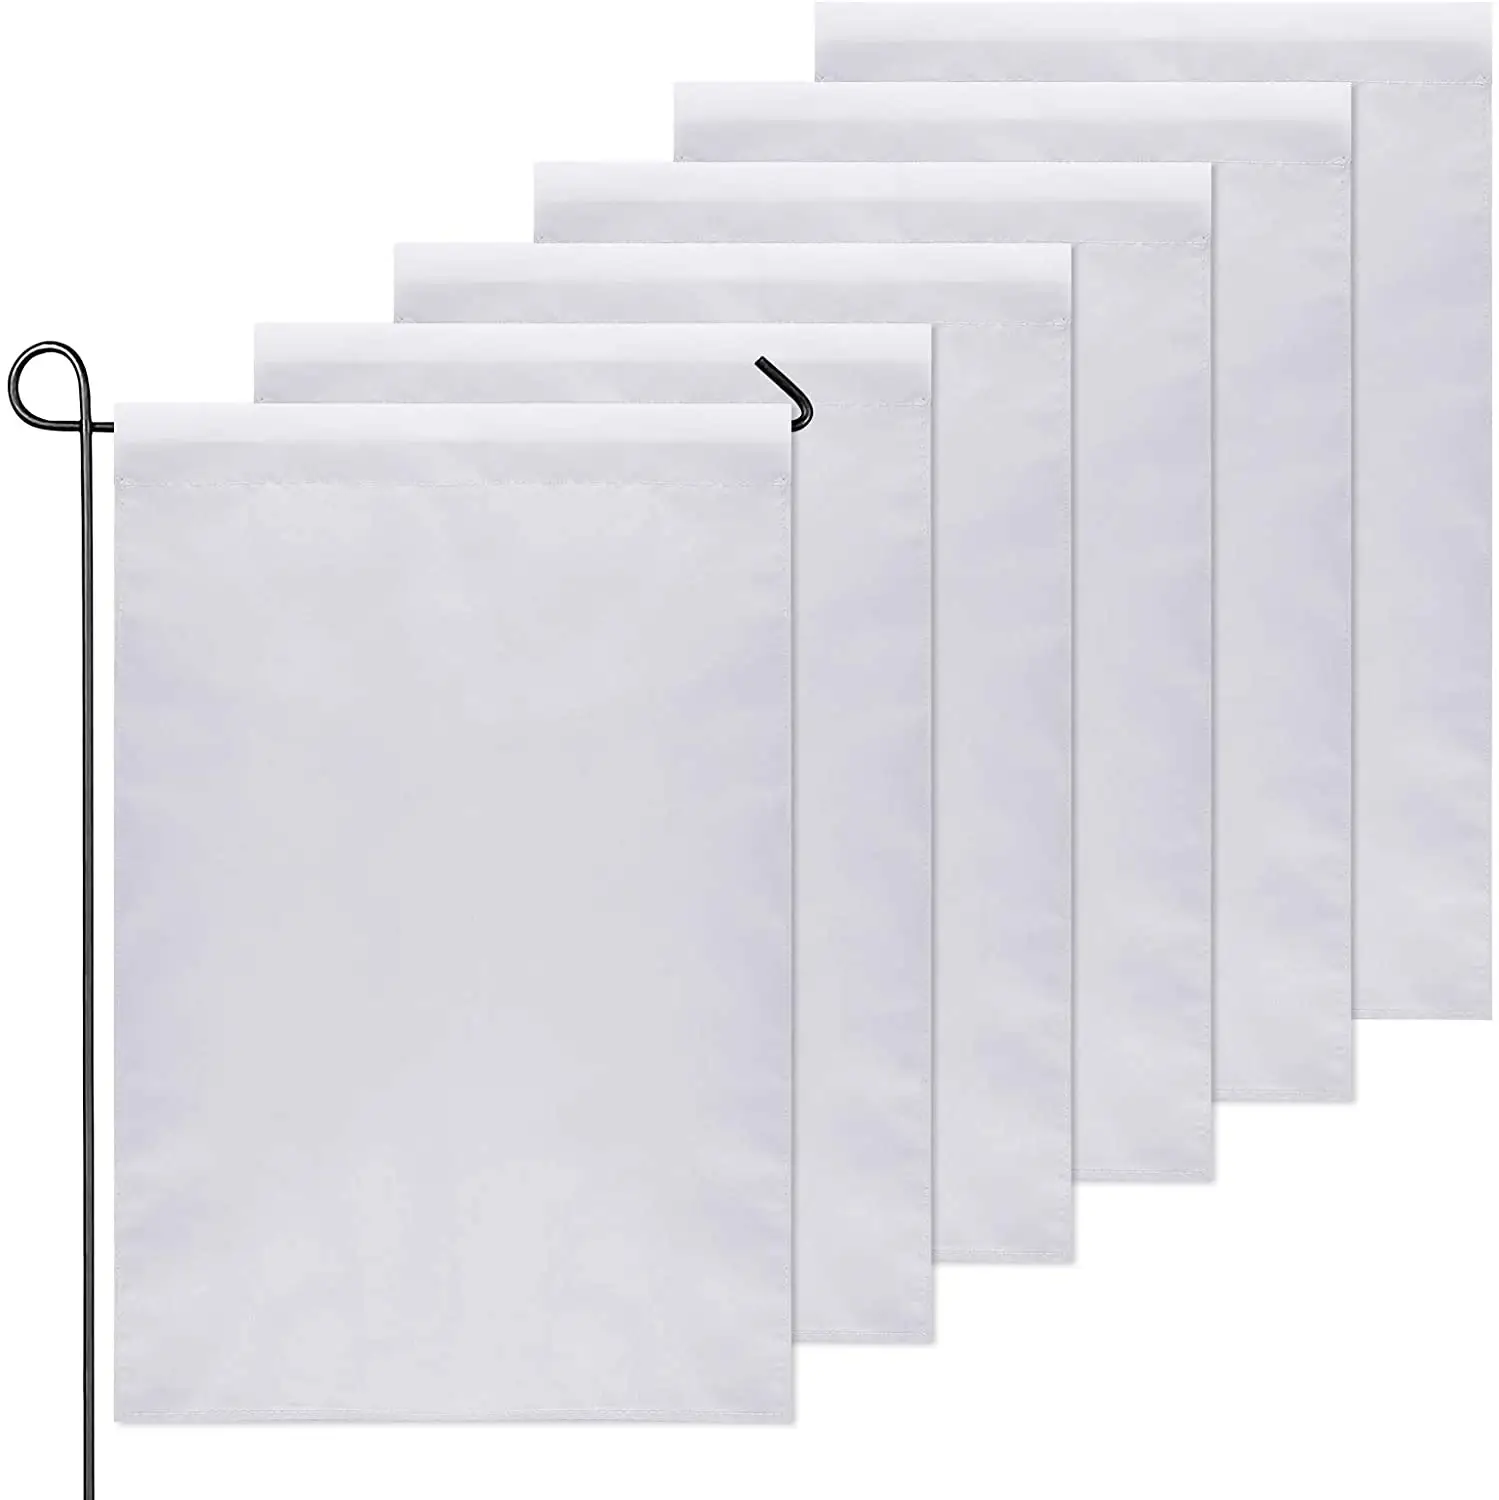 Bandera de jardín blanca de doble cara de poliéster para exteriores, 12x18 pulgadas, sublimación